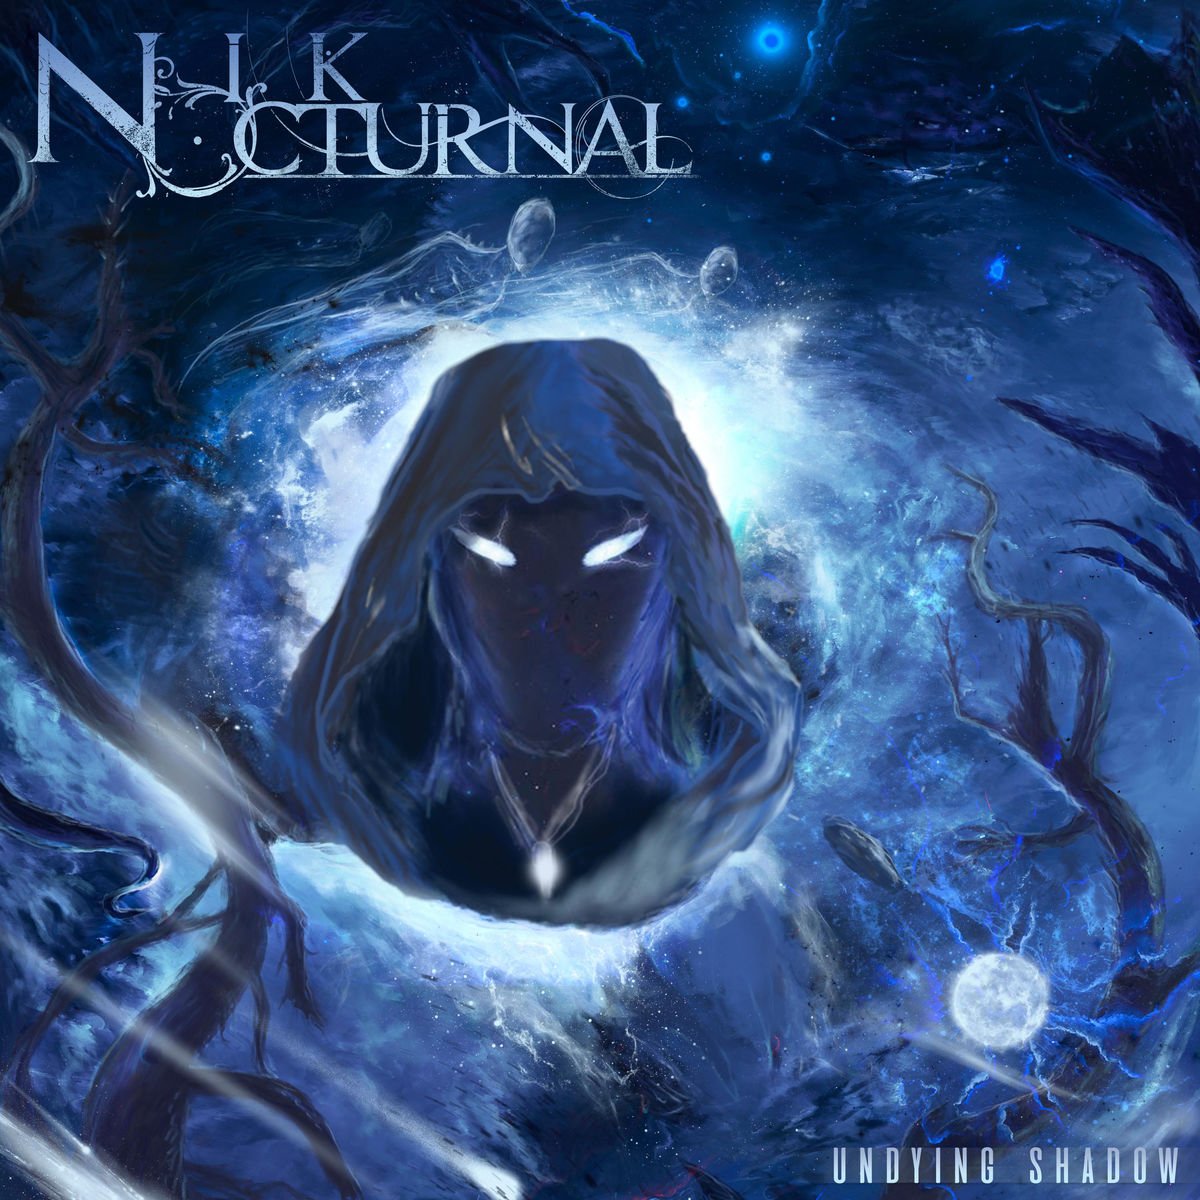 Nik nocturnal. Nick Nocturnal. Nik Nocturnal альбом. Nik Nocturnal Nik Nocturnal. Nik Nokturnal проекты.